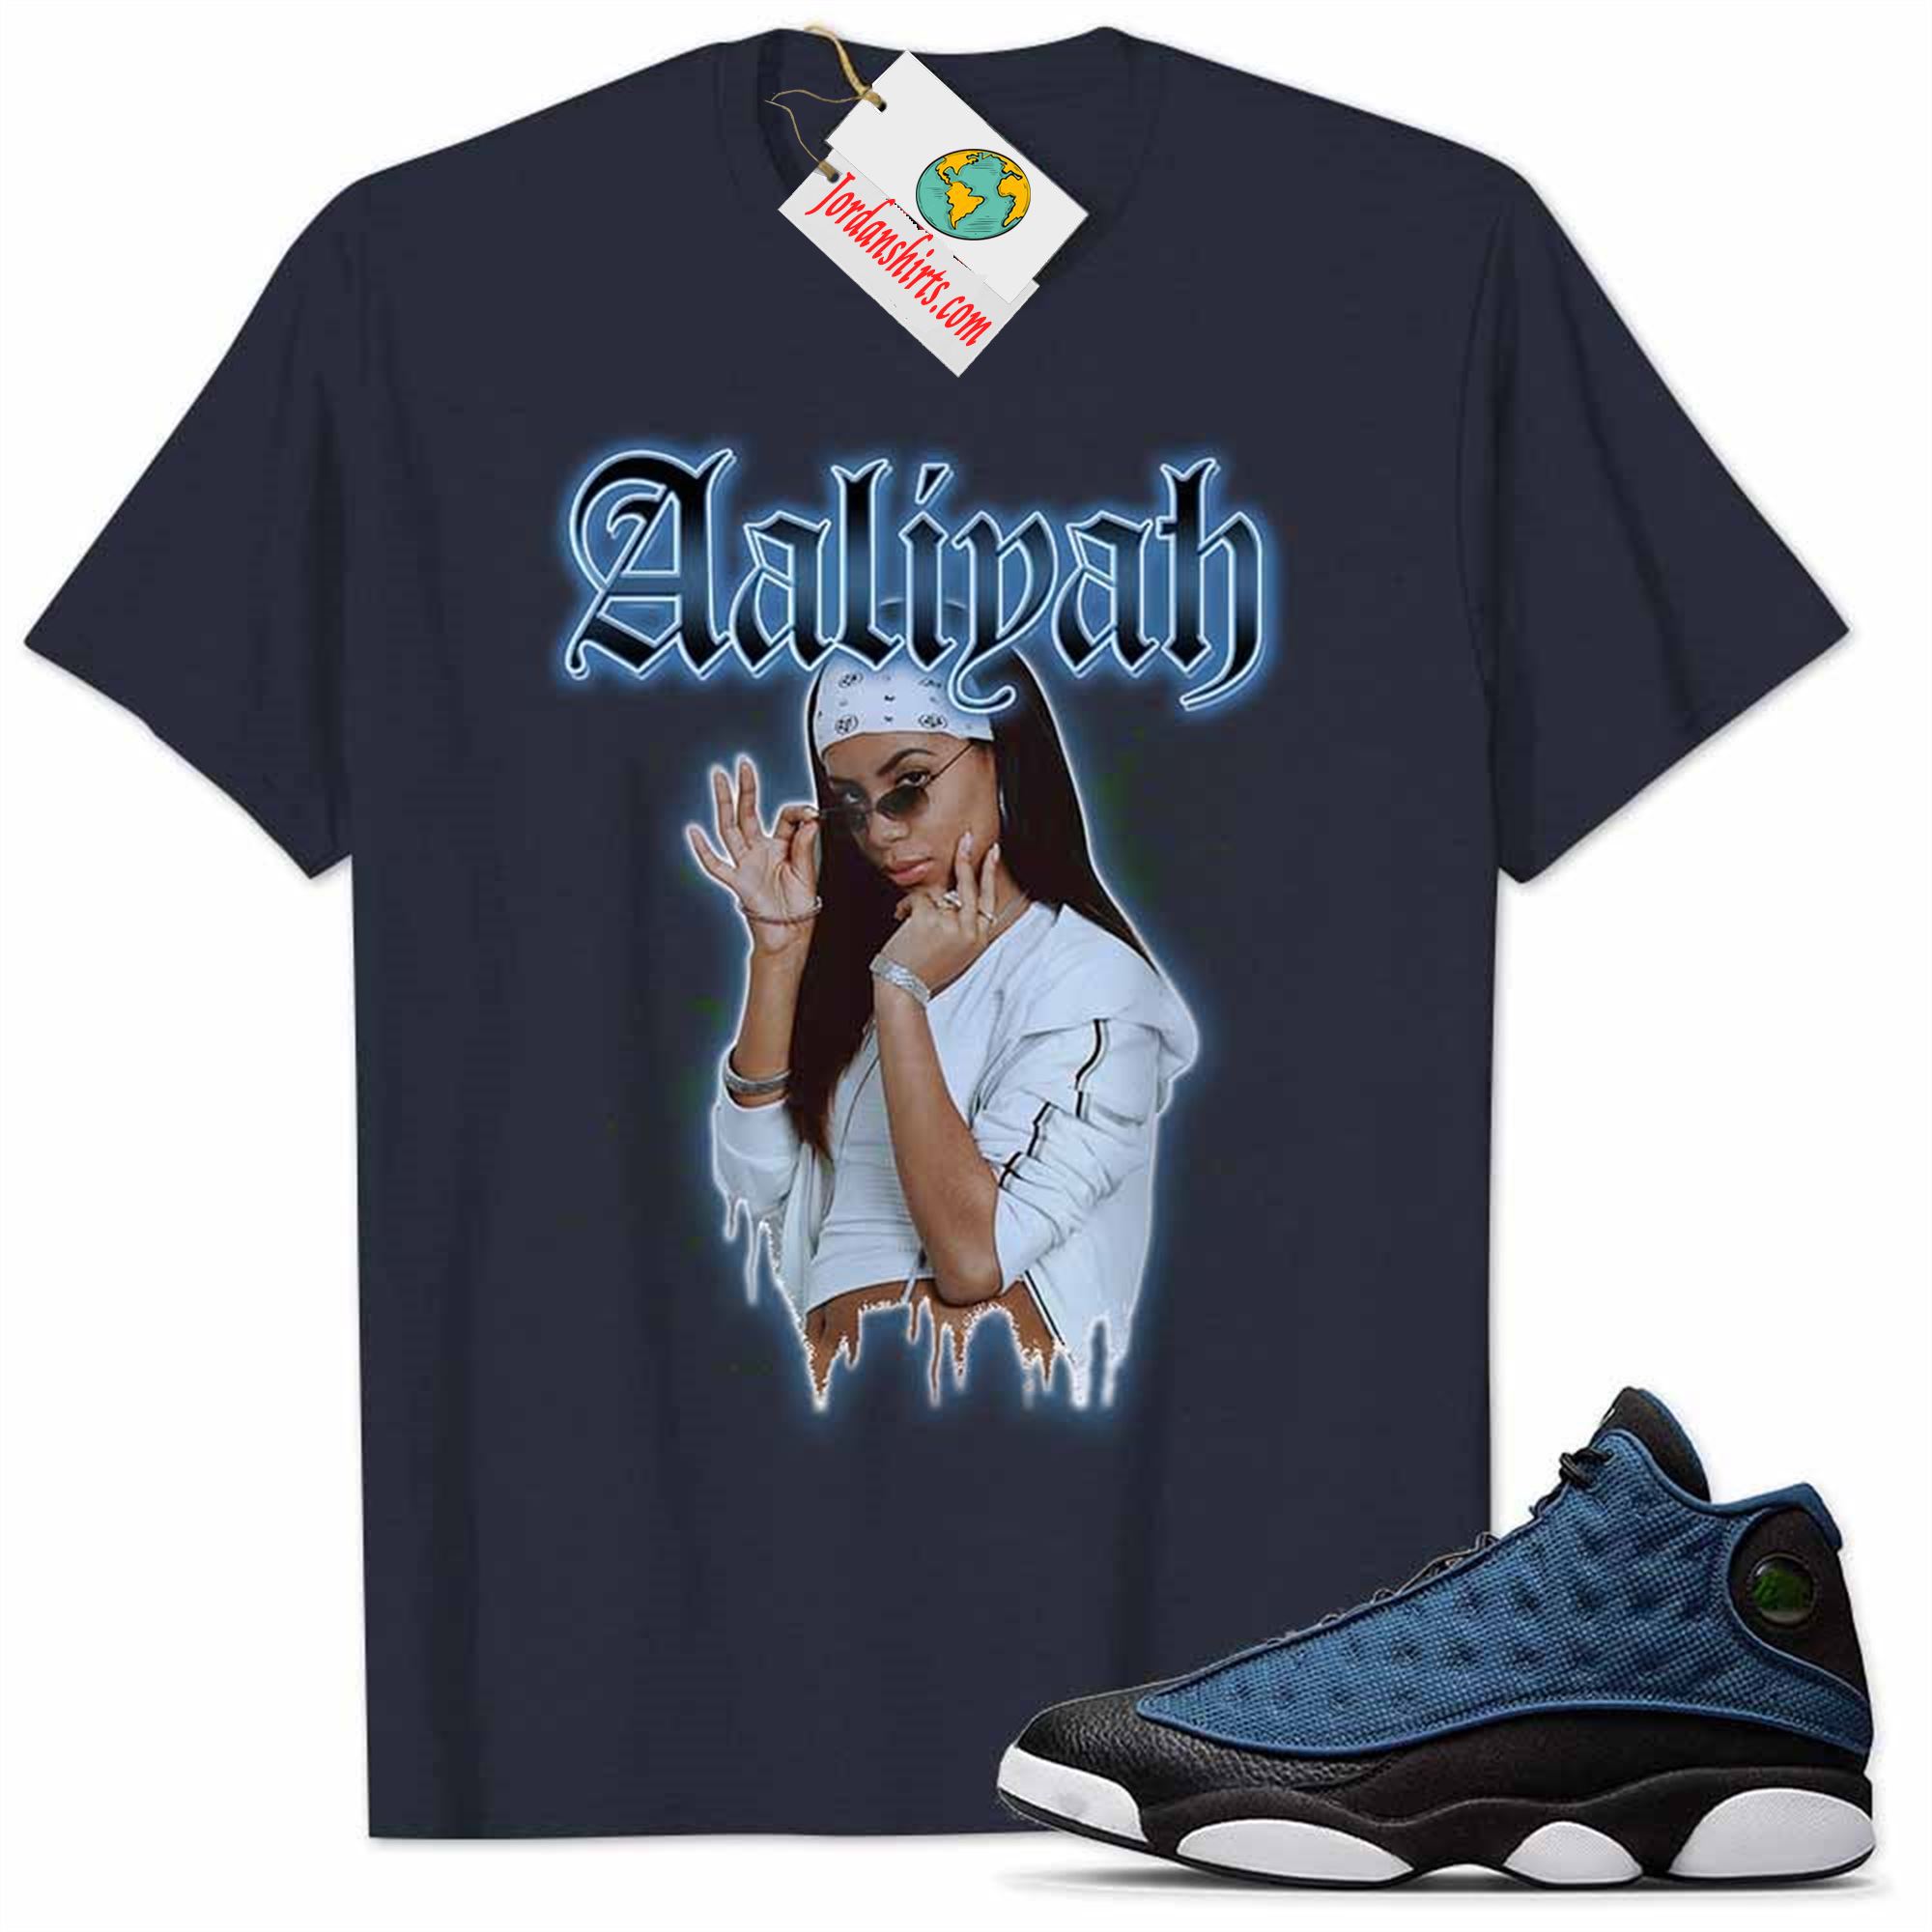 Jordan 13 Shirt, Jordan 13 Brave Blue Shirt Aaliyah Graphic Navy Plus Size Up To 5xl